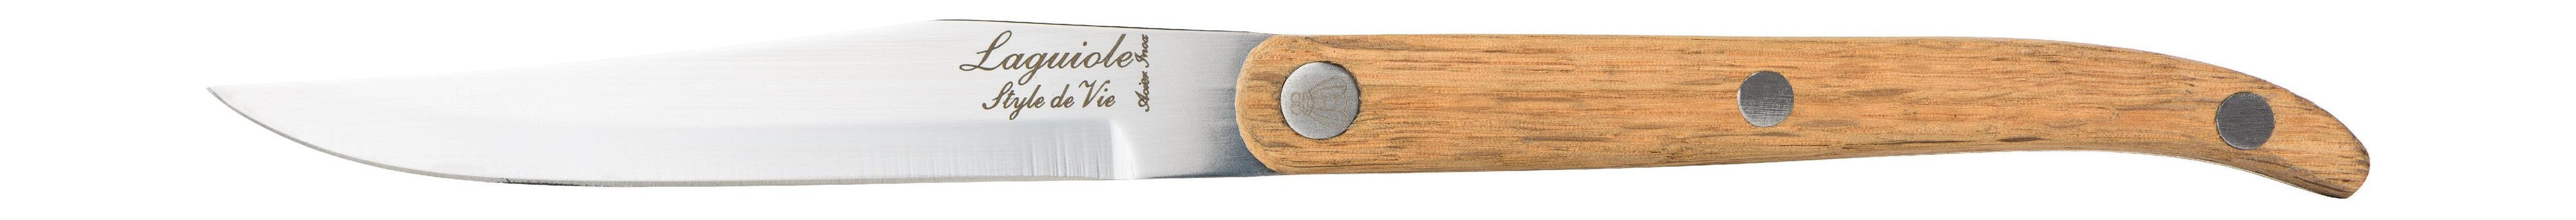 Estilo de Vie Authentique Laguiole Innovation Line Kneak Knives de 6 piezas de madera de roble, cuchilla suave